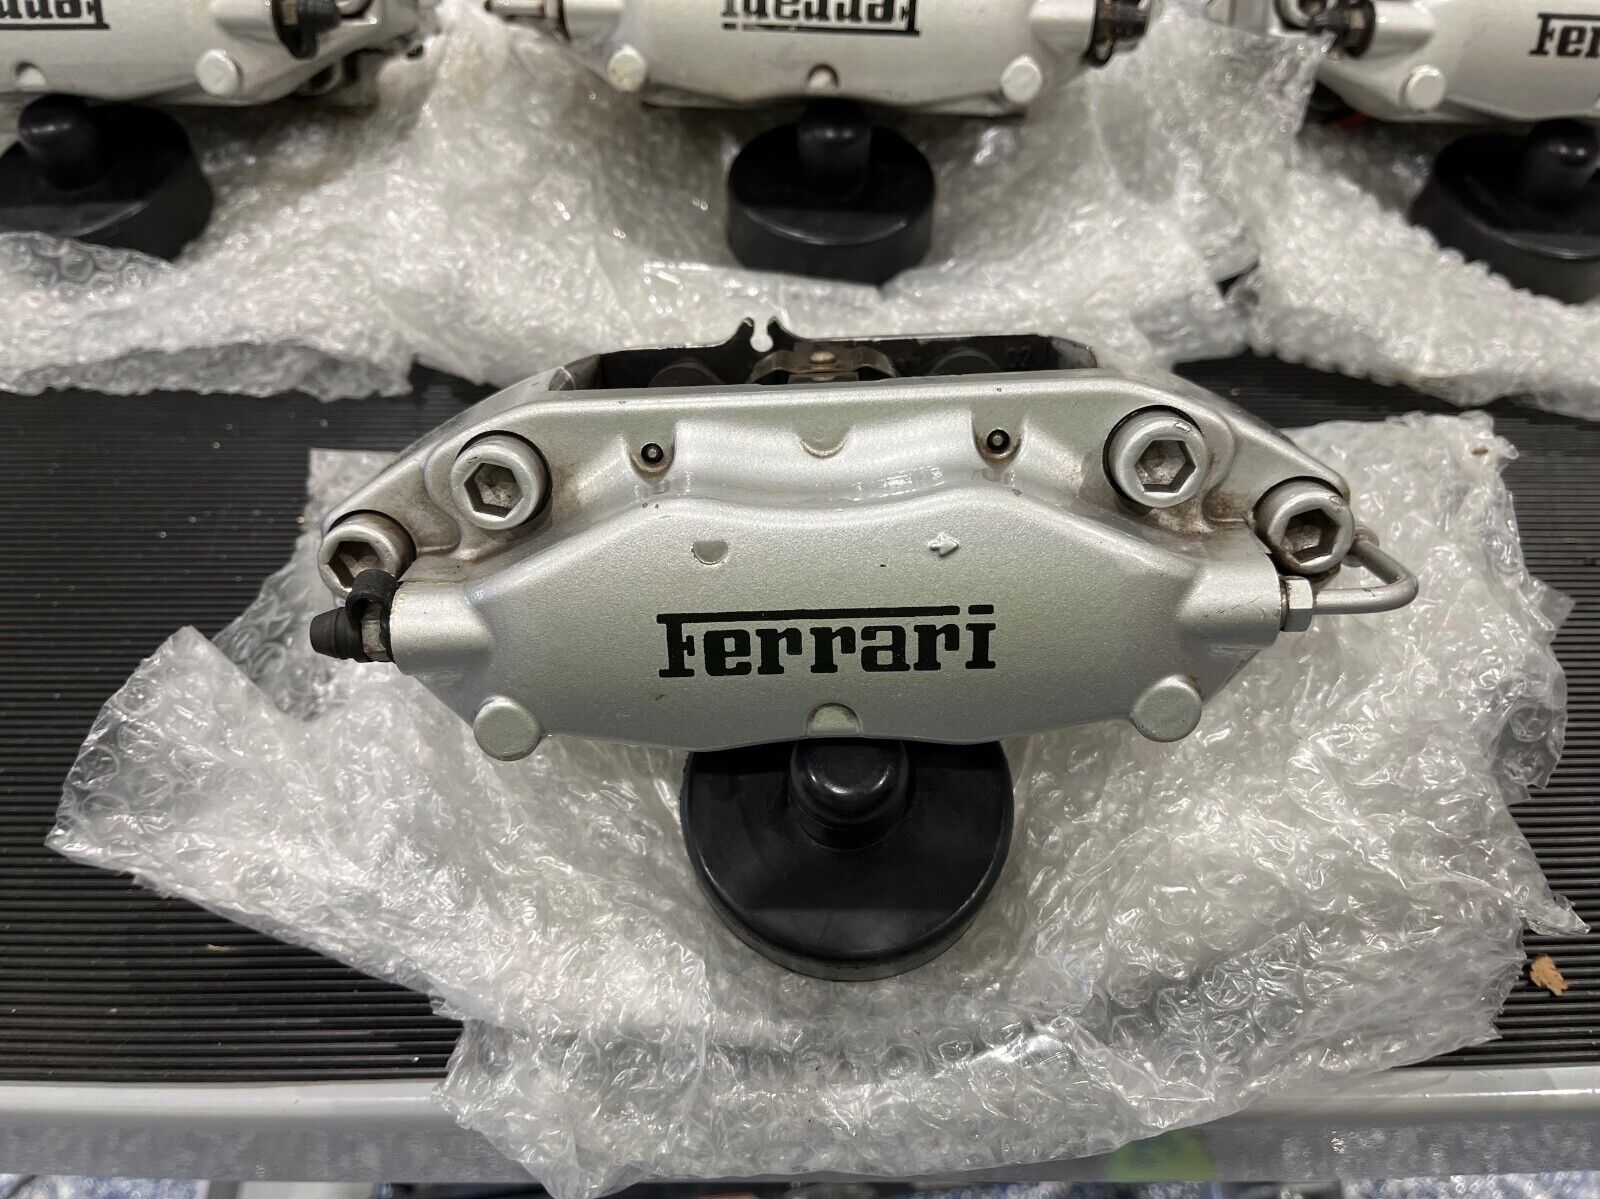 Ferrari aluminum brake calipers